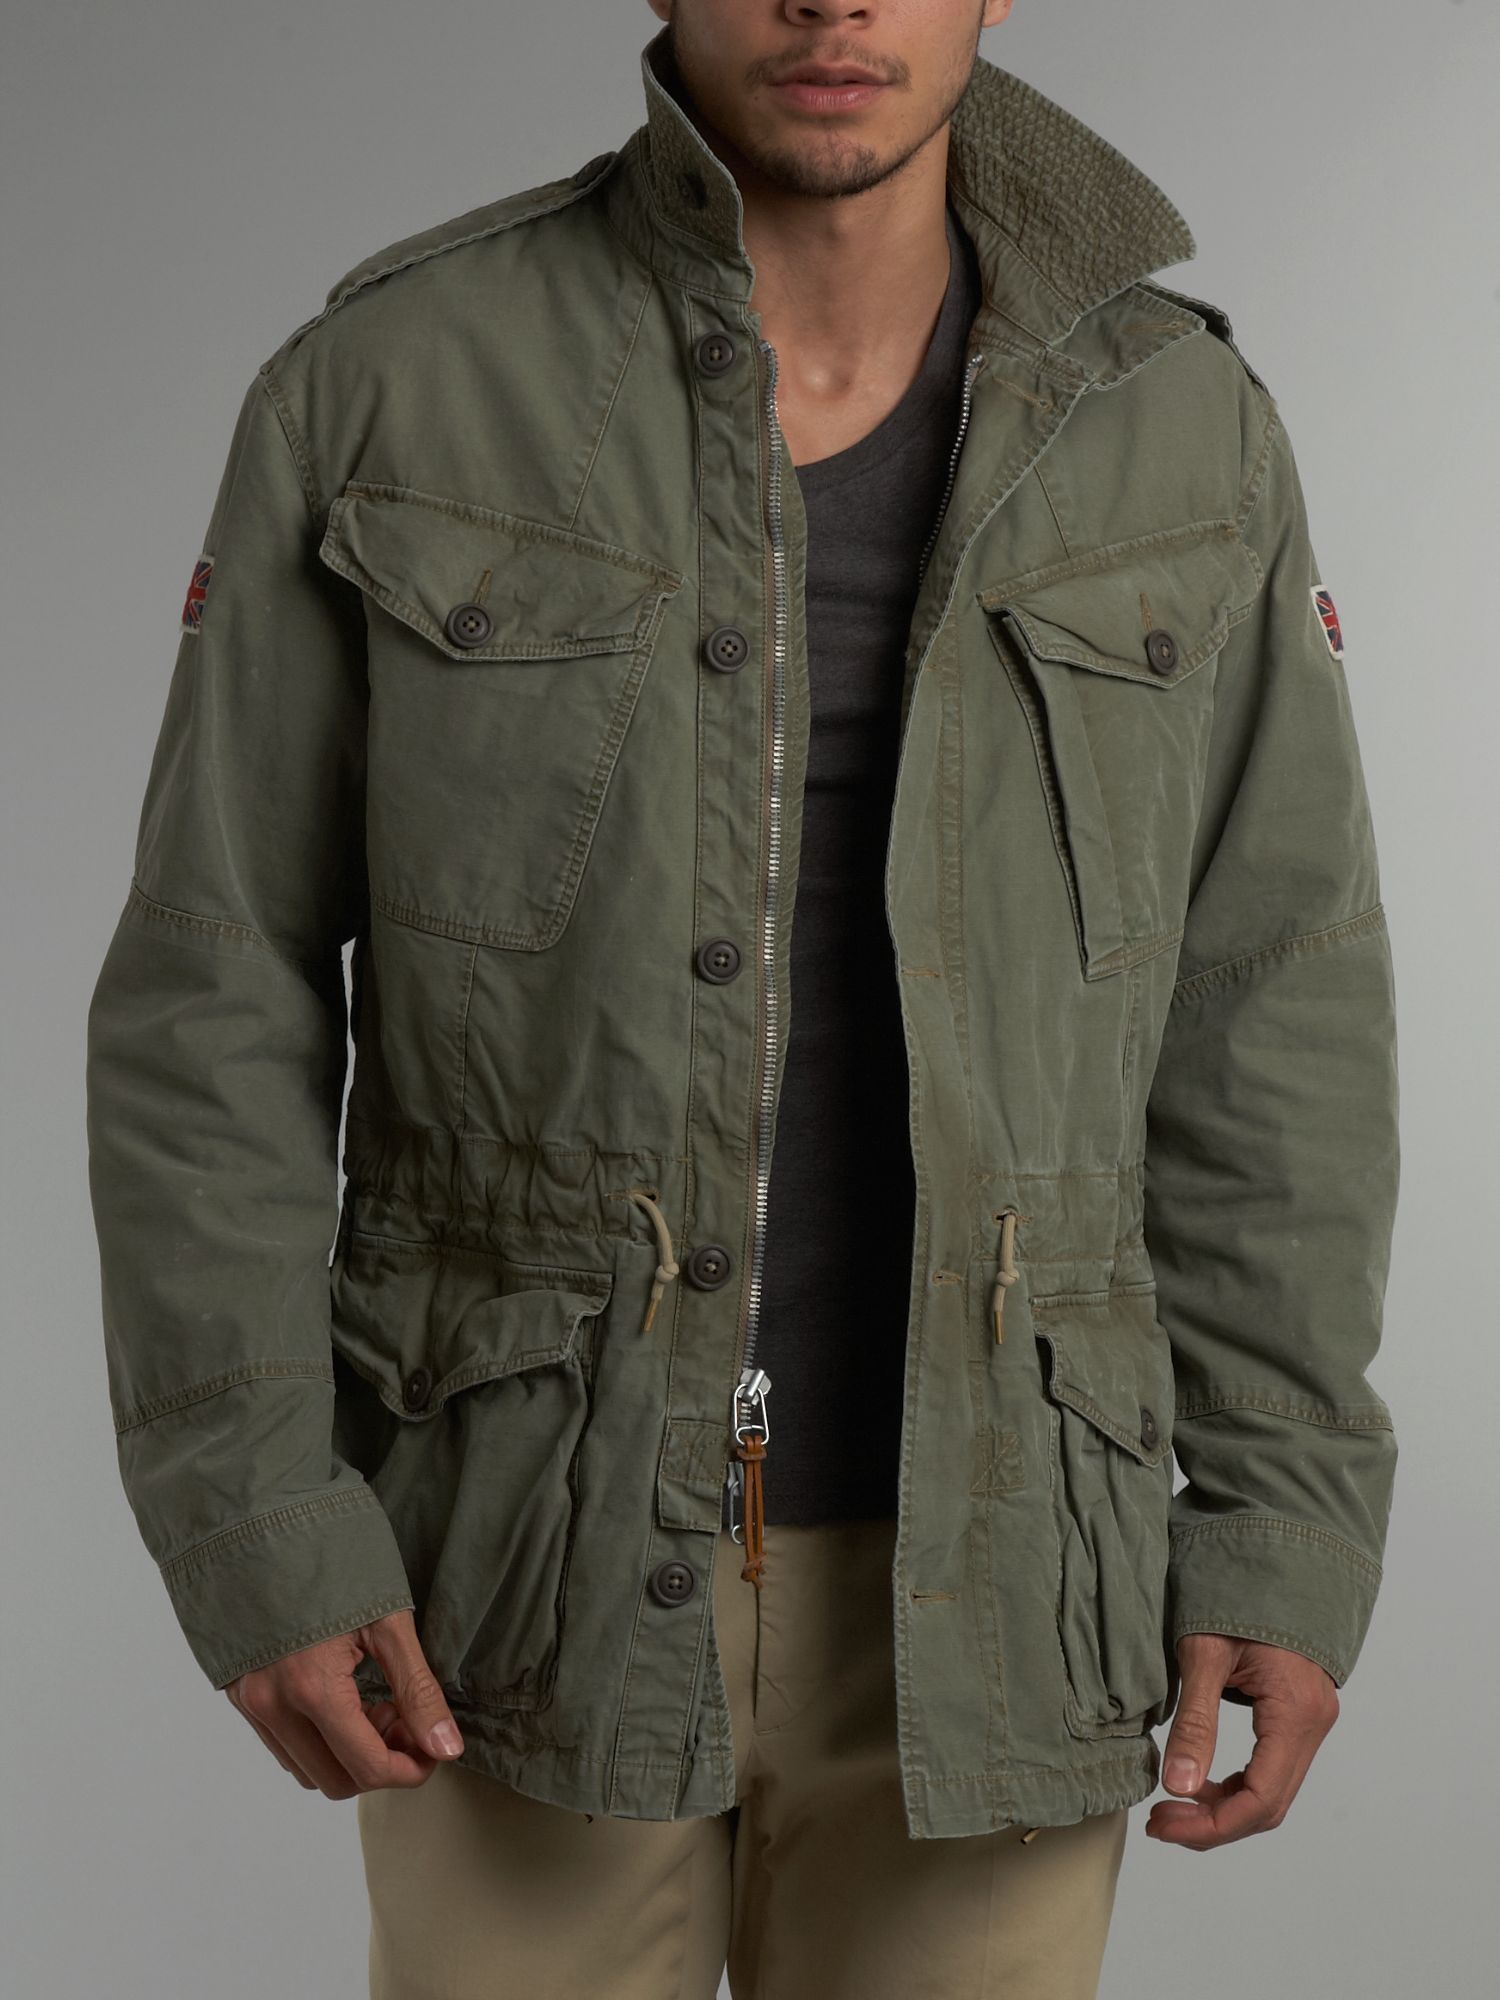 Polo Ralph Lauren Distressed Combat Jacket In Green For Men Lyst